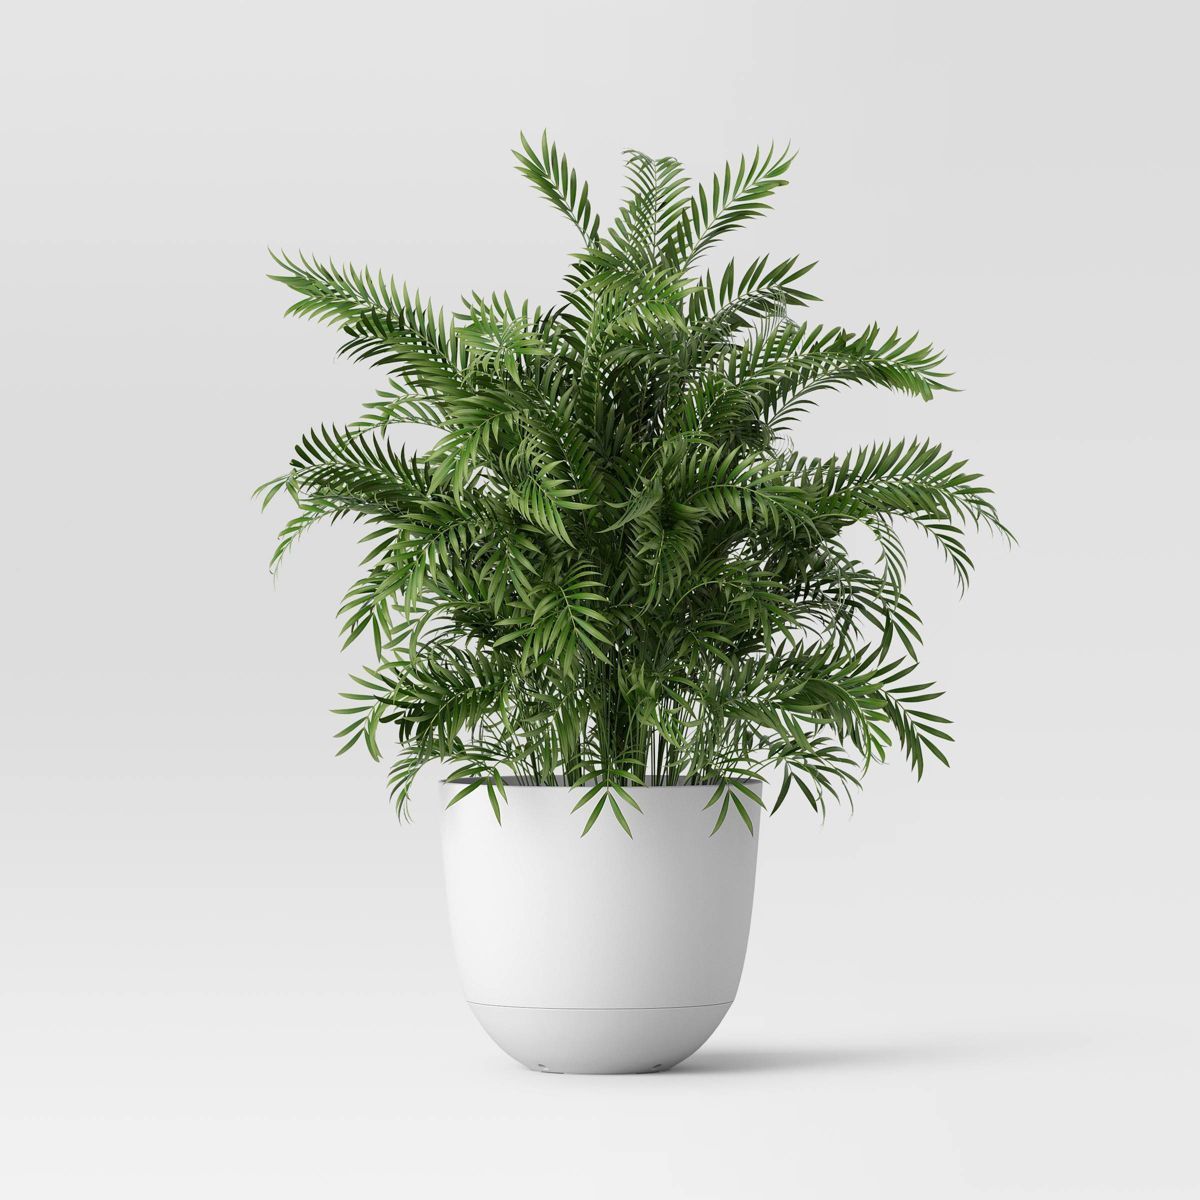 Self-Watering Plastic Indoor Outdoor Planter Pot White 12"x12" - Room Essentials™ | Target